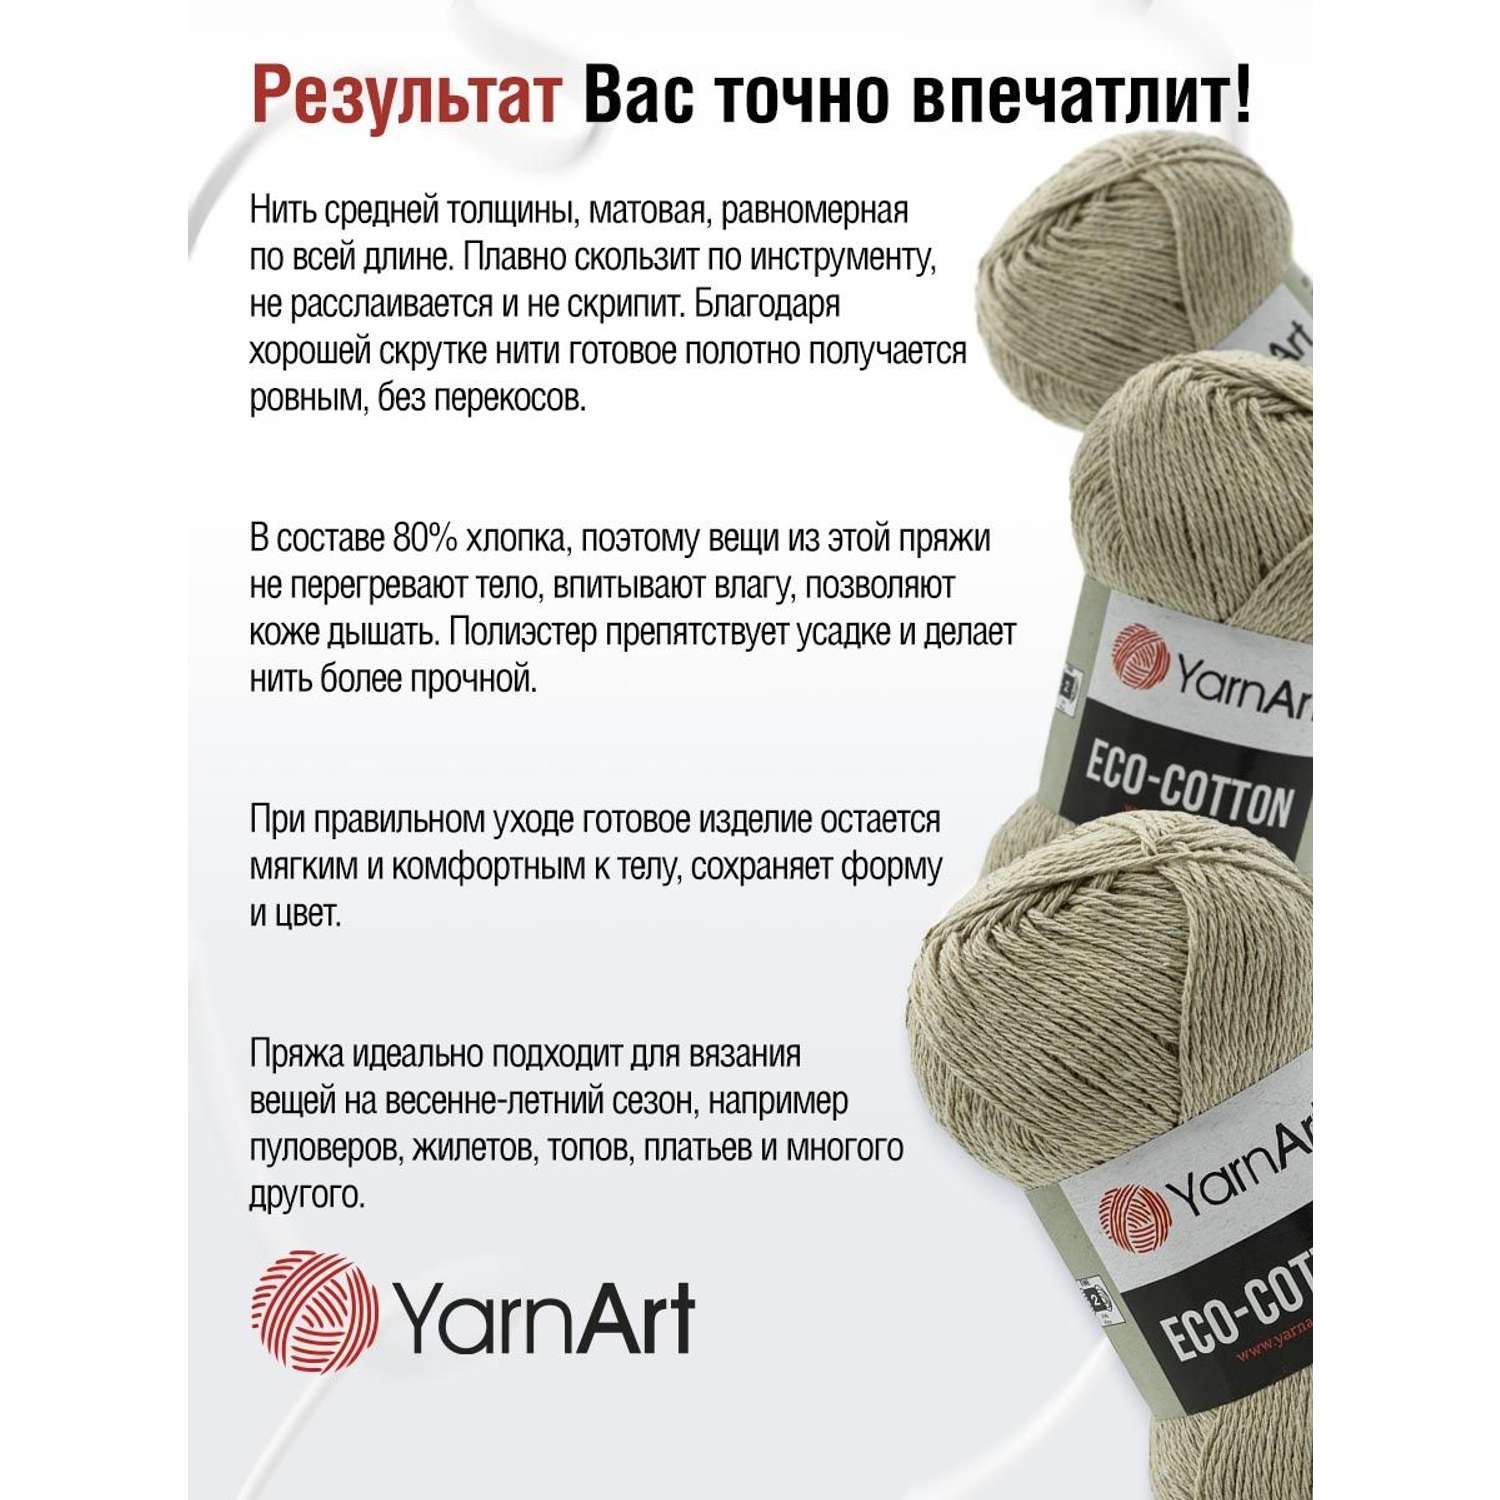 Пряжа YarnArt Eco Cotton комфортная для летних вещей 100 г 220 м 768 холодный беж 5 мотков - фото 4